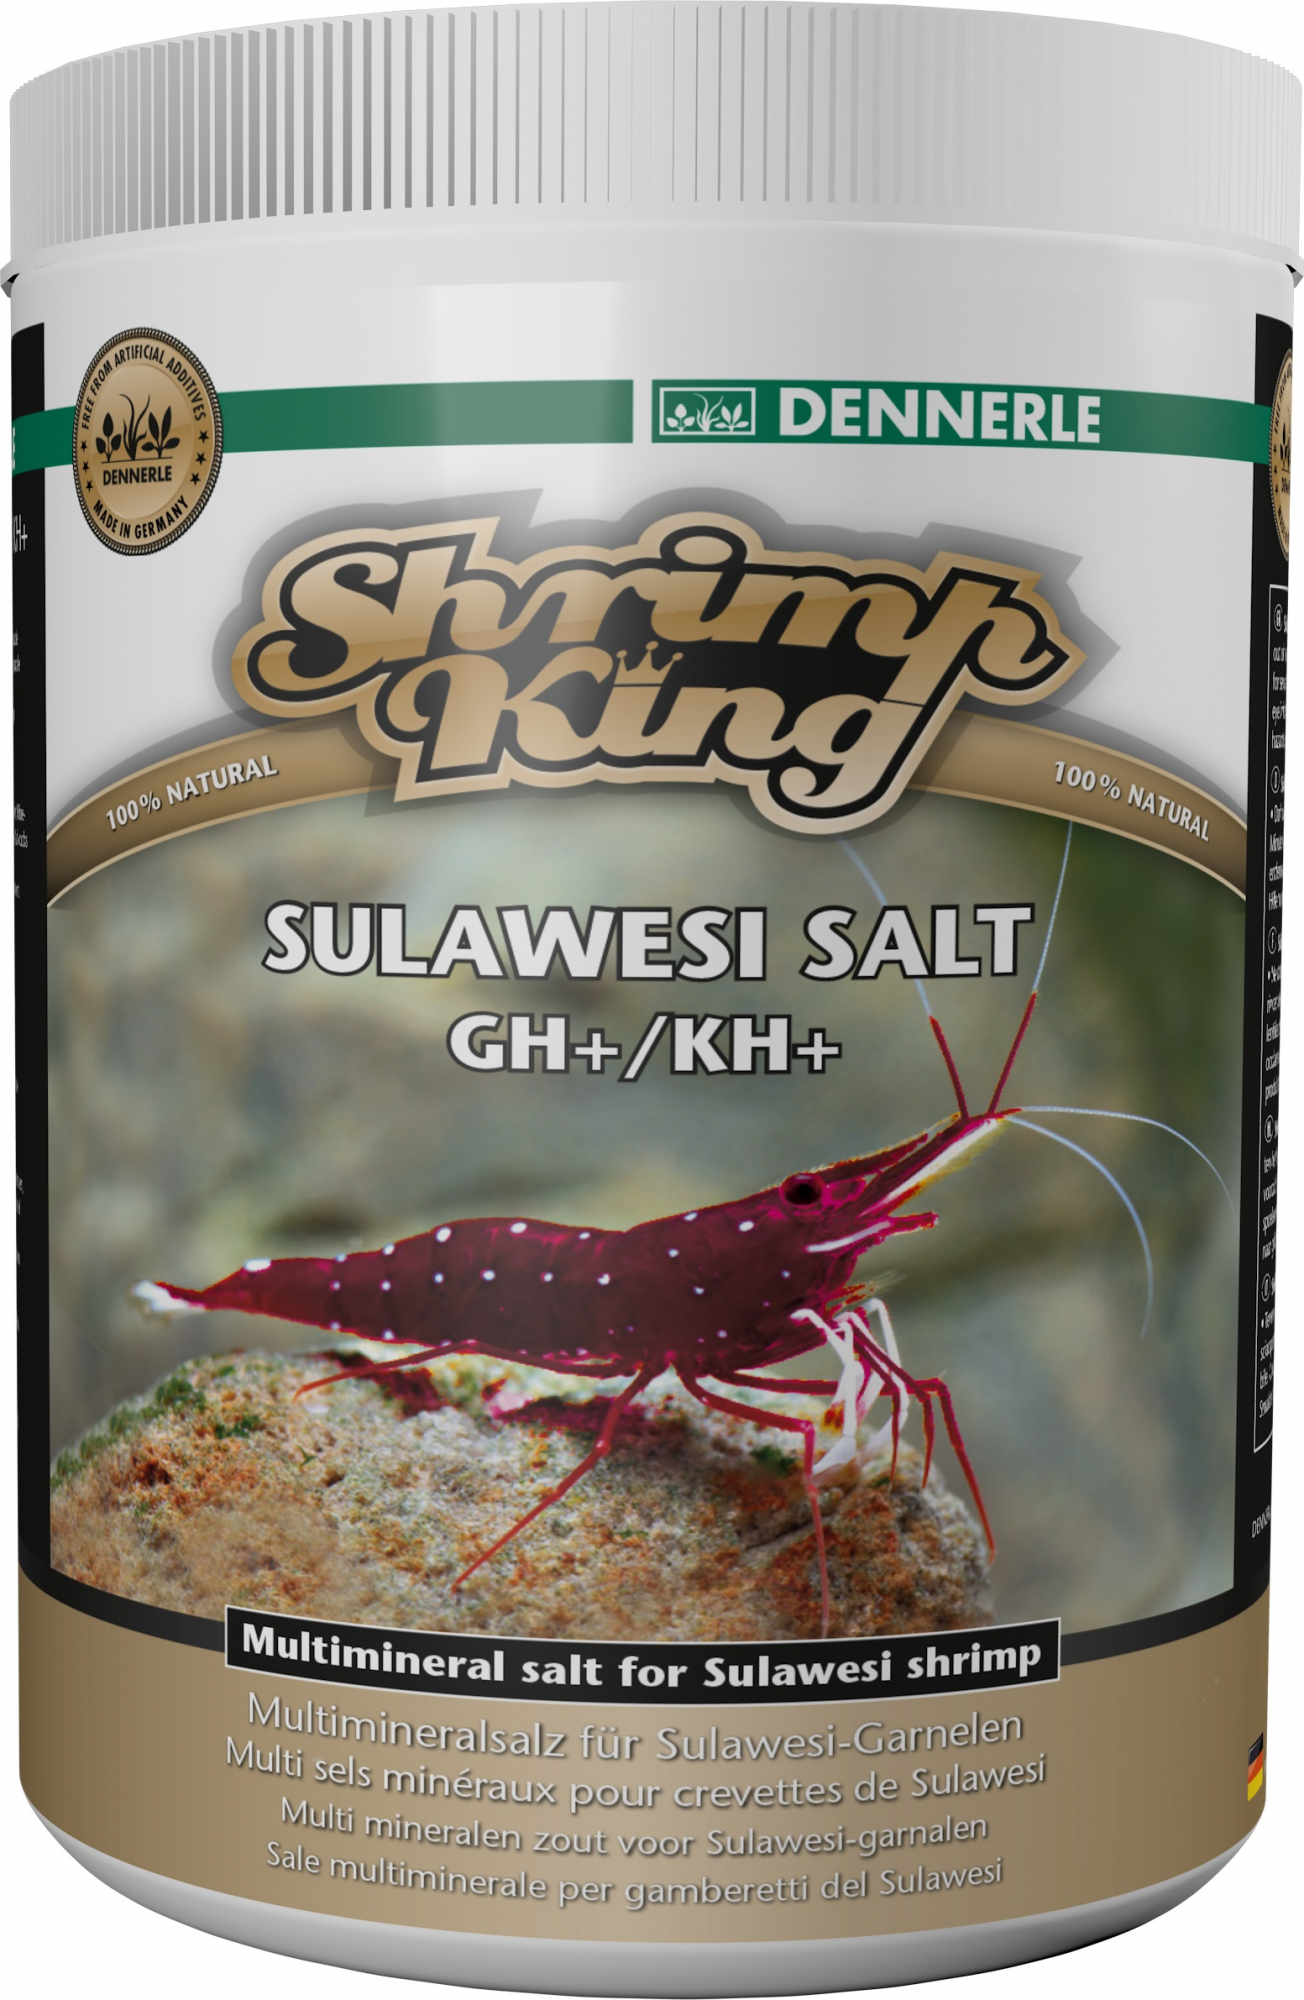 Dennerle Shrimp King Sulawesi Salt, sales multiminerales para camarones de los lagos de Sulawesi